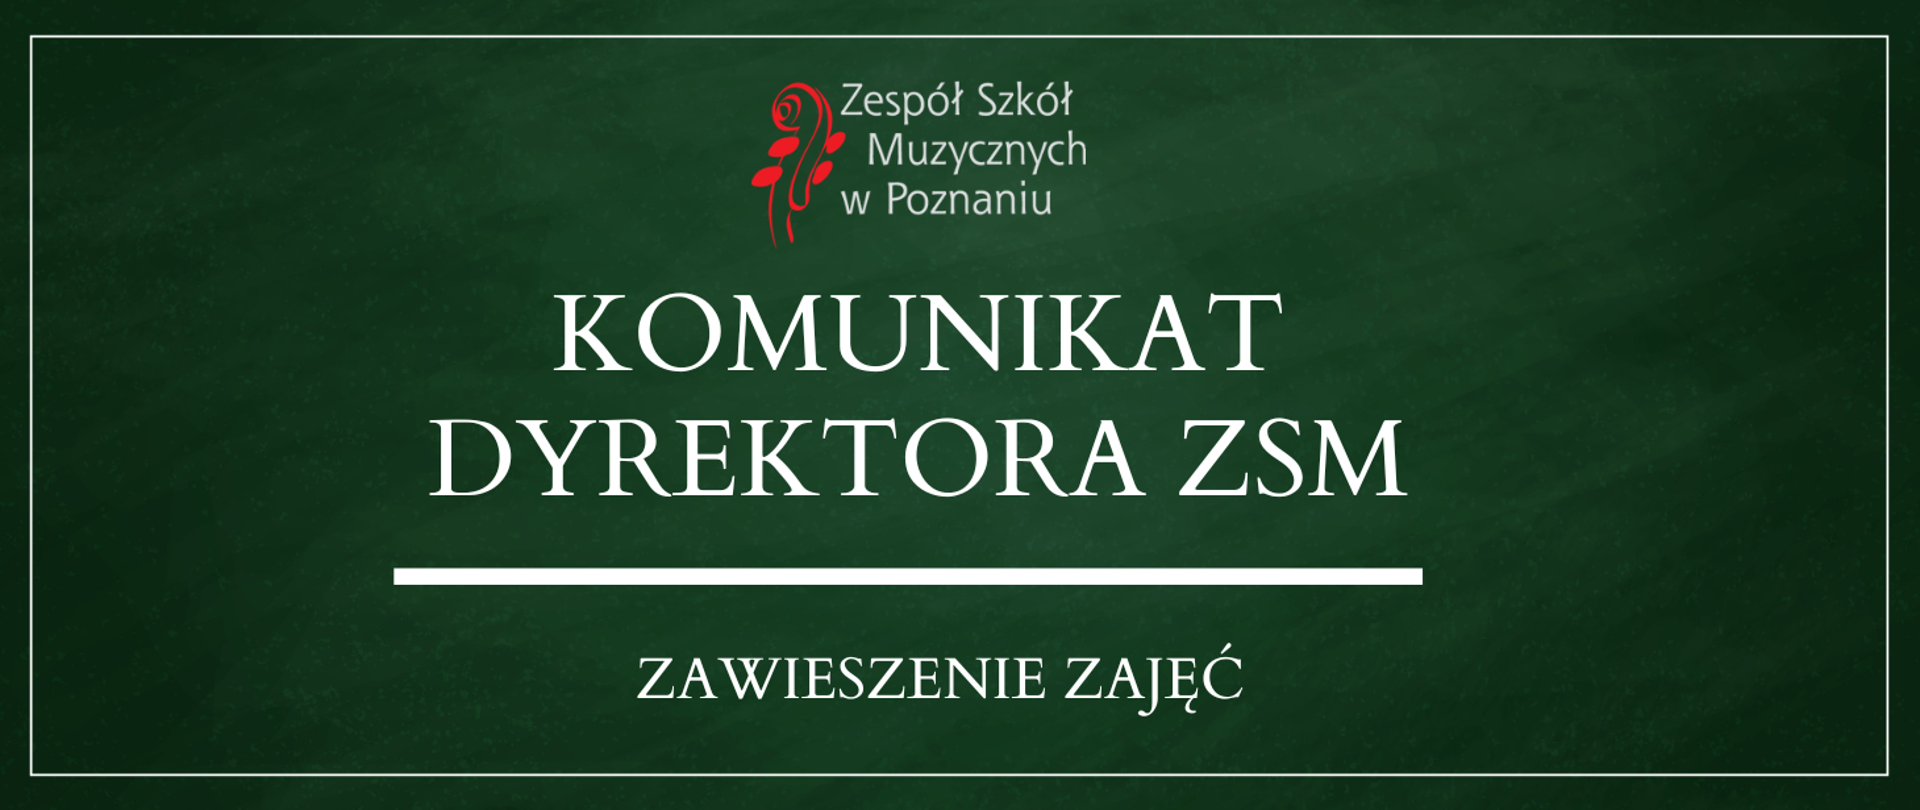 Baner na zielonym tle z logo ZSM, tekst: Komunikat Dyrektora ZSM - zawieszenie zajęć